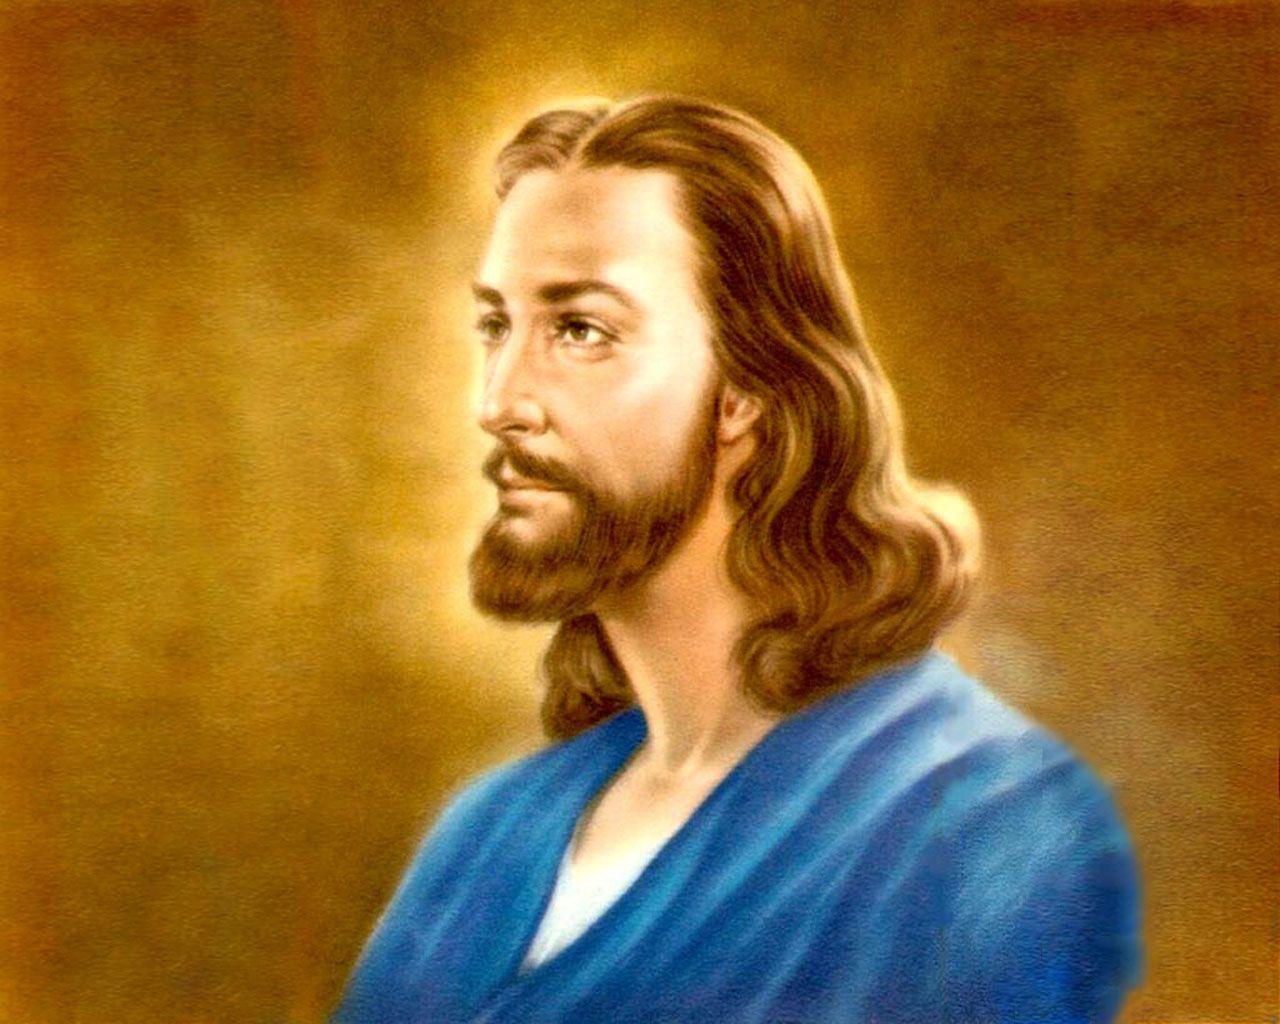 Jesus HD Wallpaper